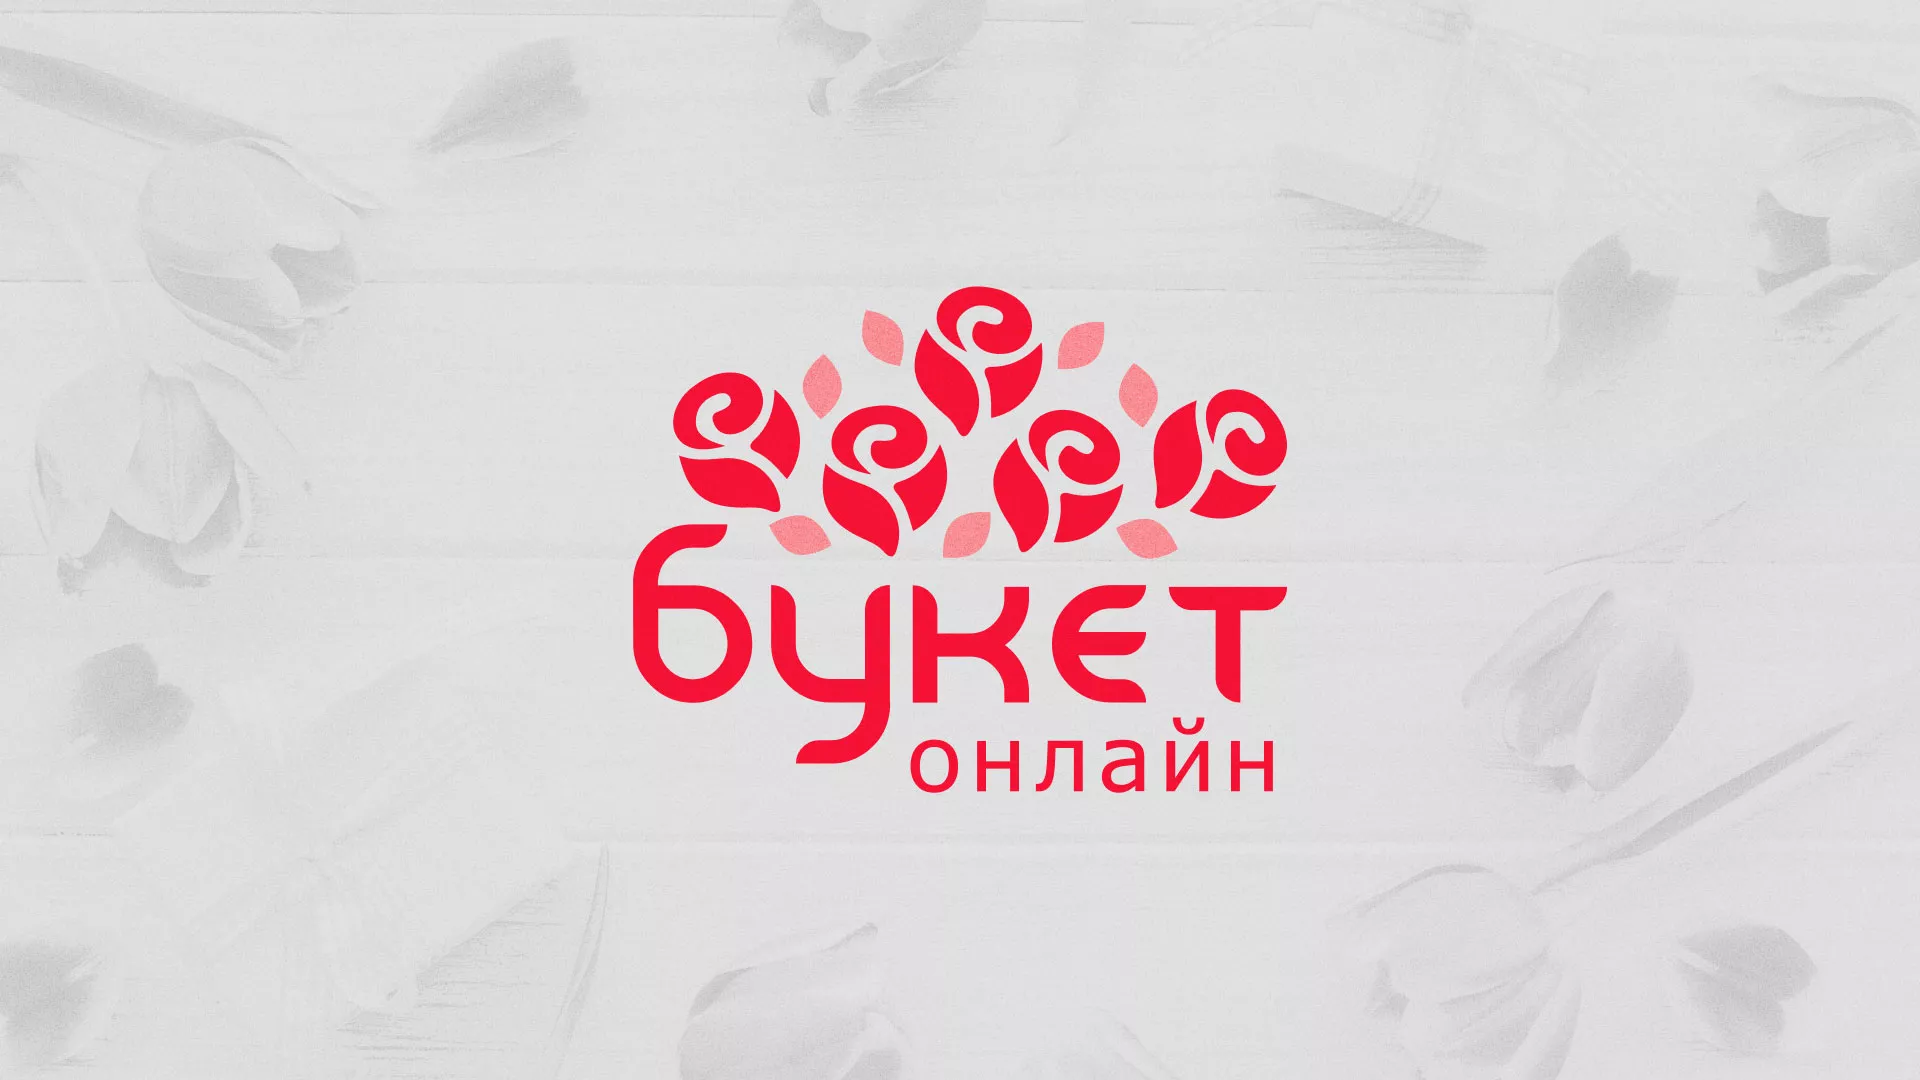 Создание интернет-магазина «Букет-онлайн» по цветам в Михайлове